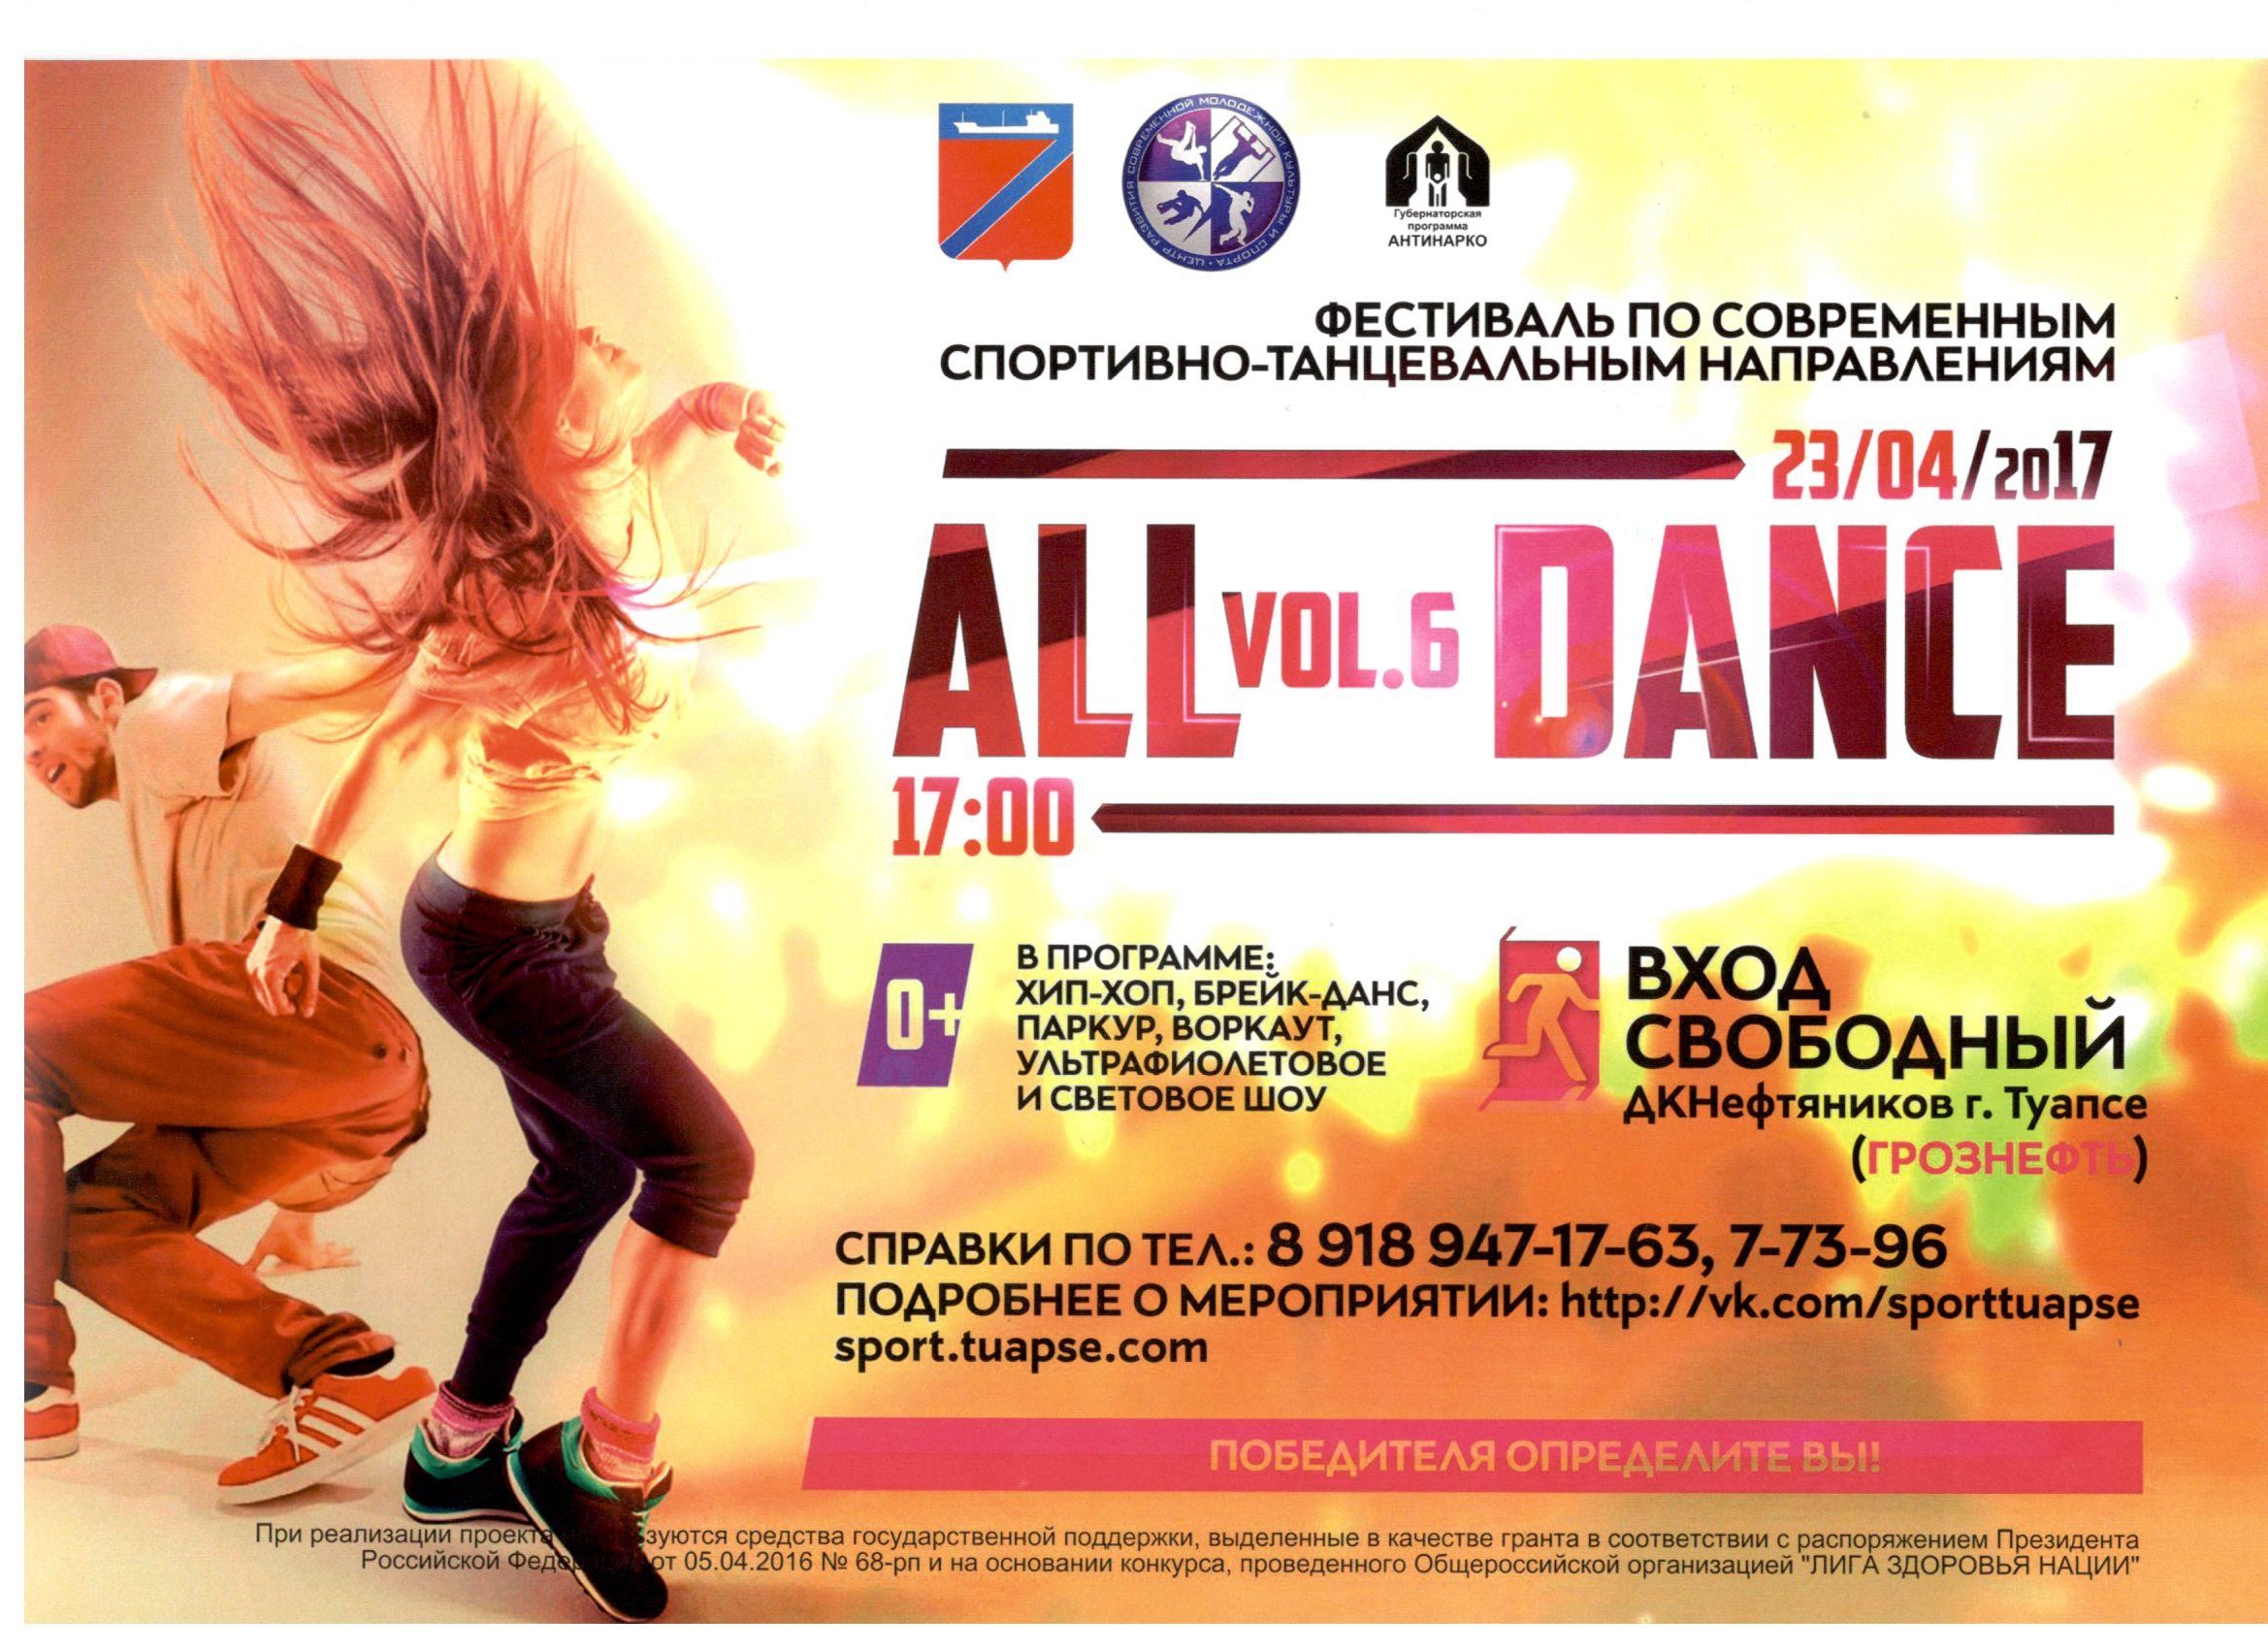 Фестиваль  современного молодежного танца «ALL DANCE» во Дворце культуры нефтяников  города Туапсе состоится  23 апреля в 17:00